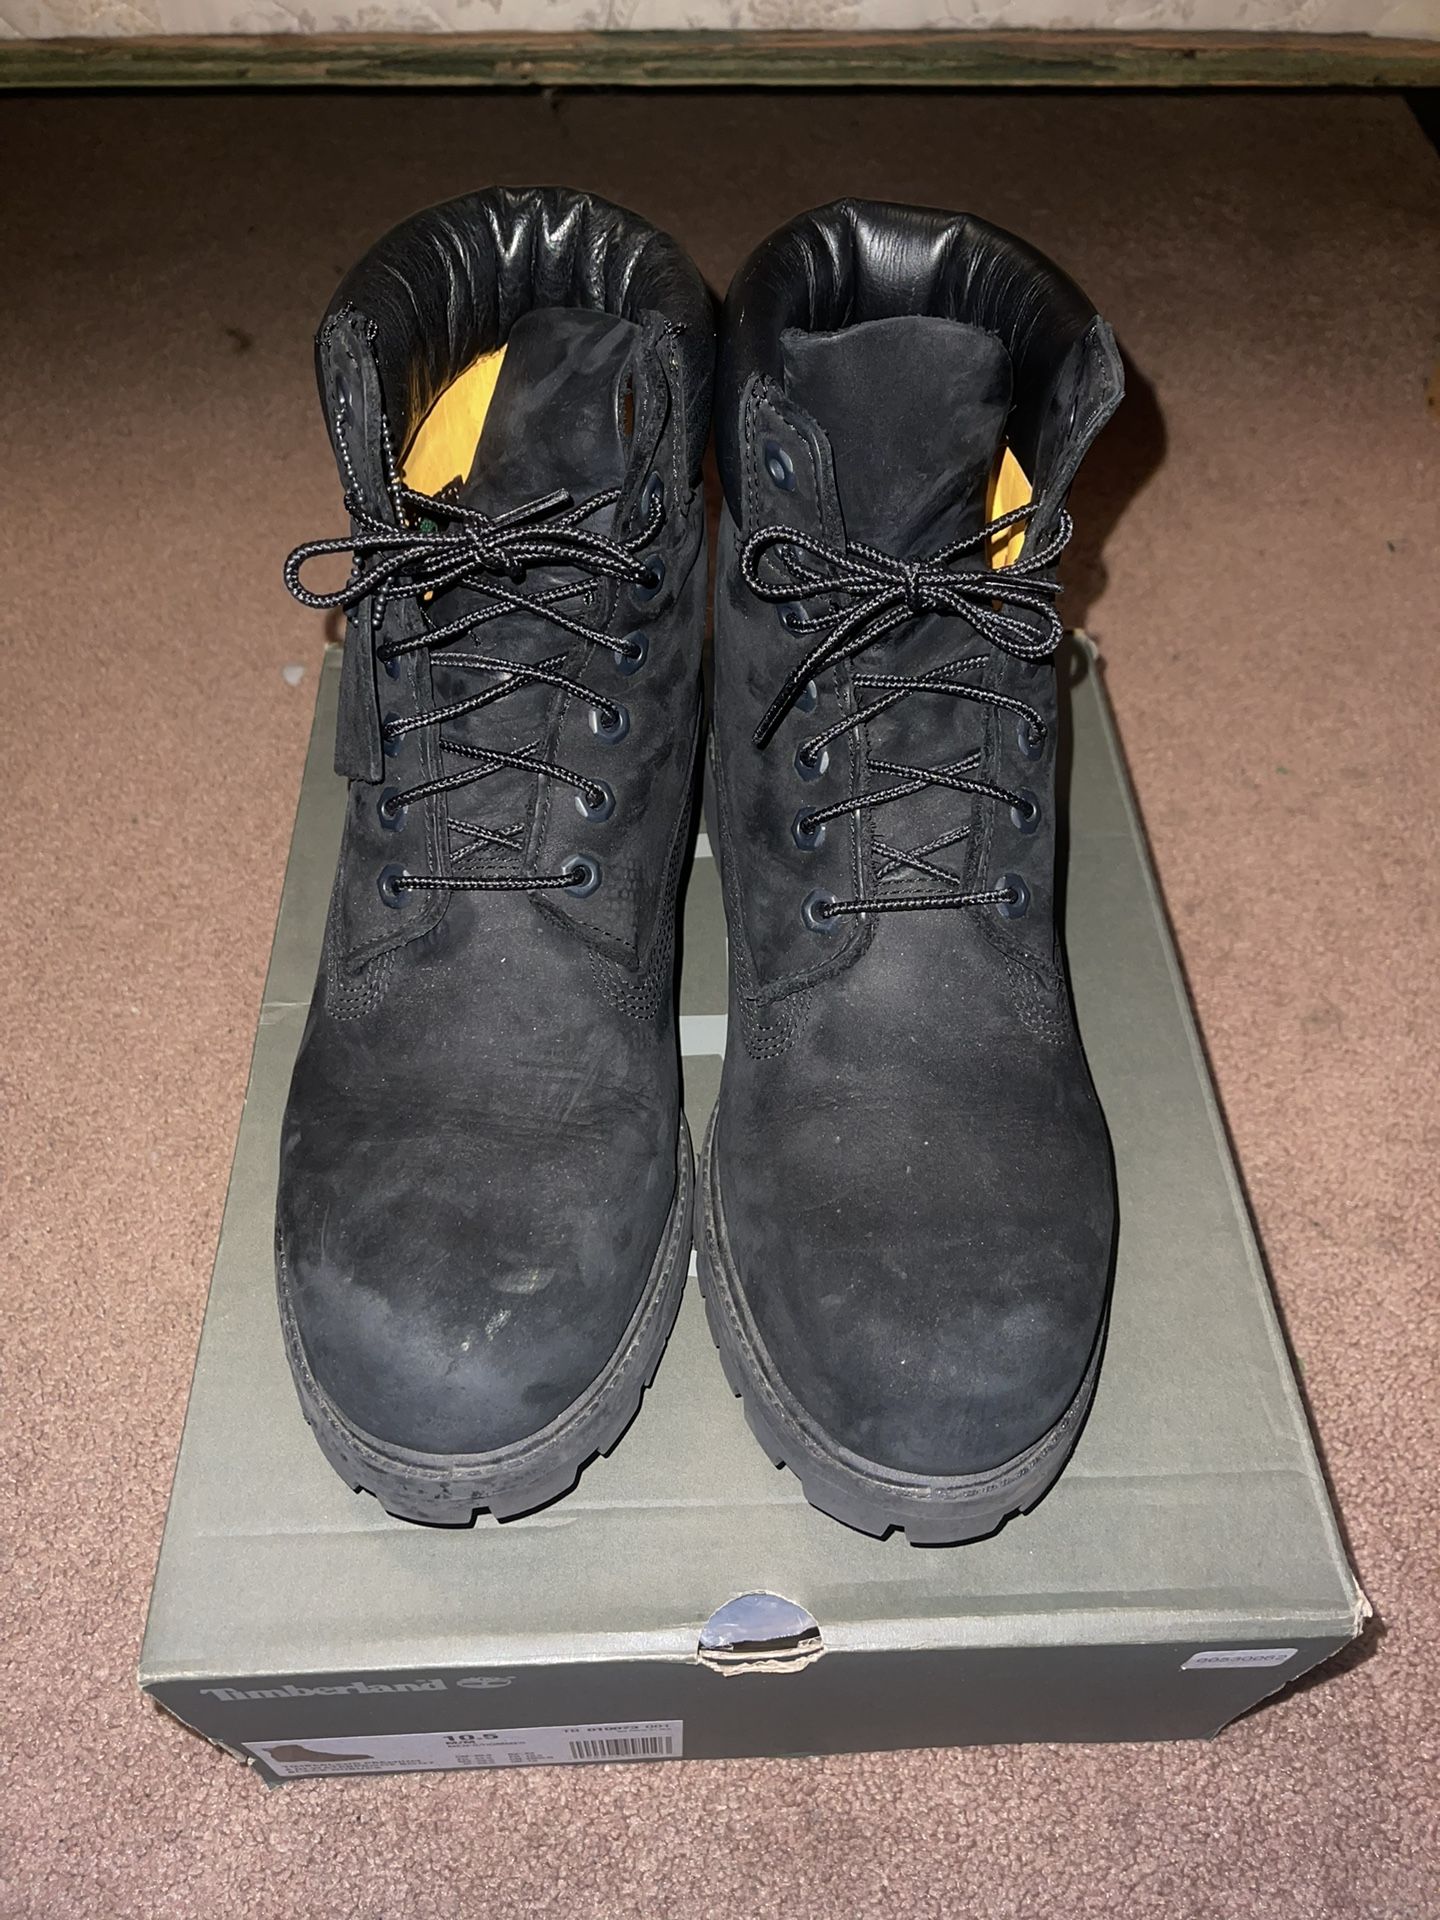 Timberland 6” Premium Waterproof Boots Size 10.5 Men’s